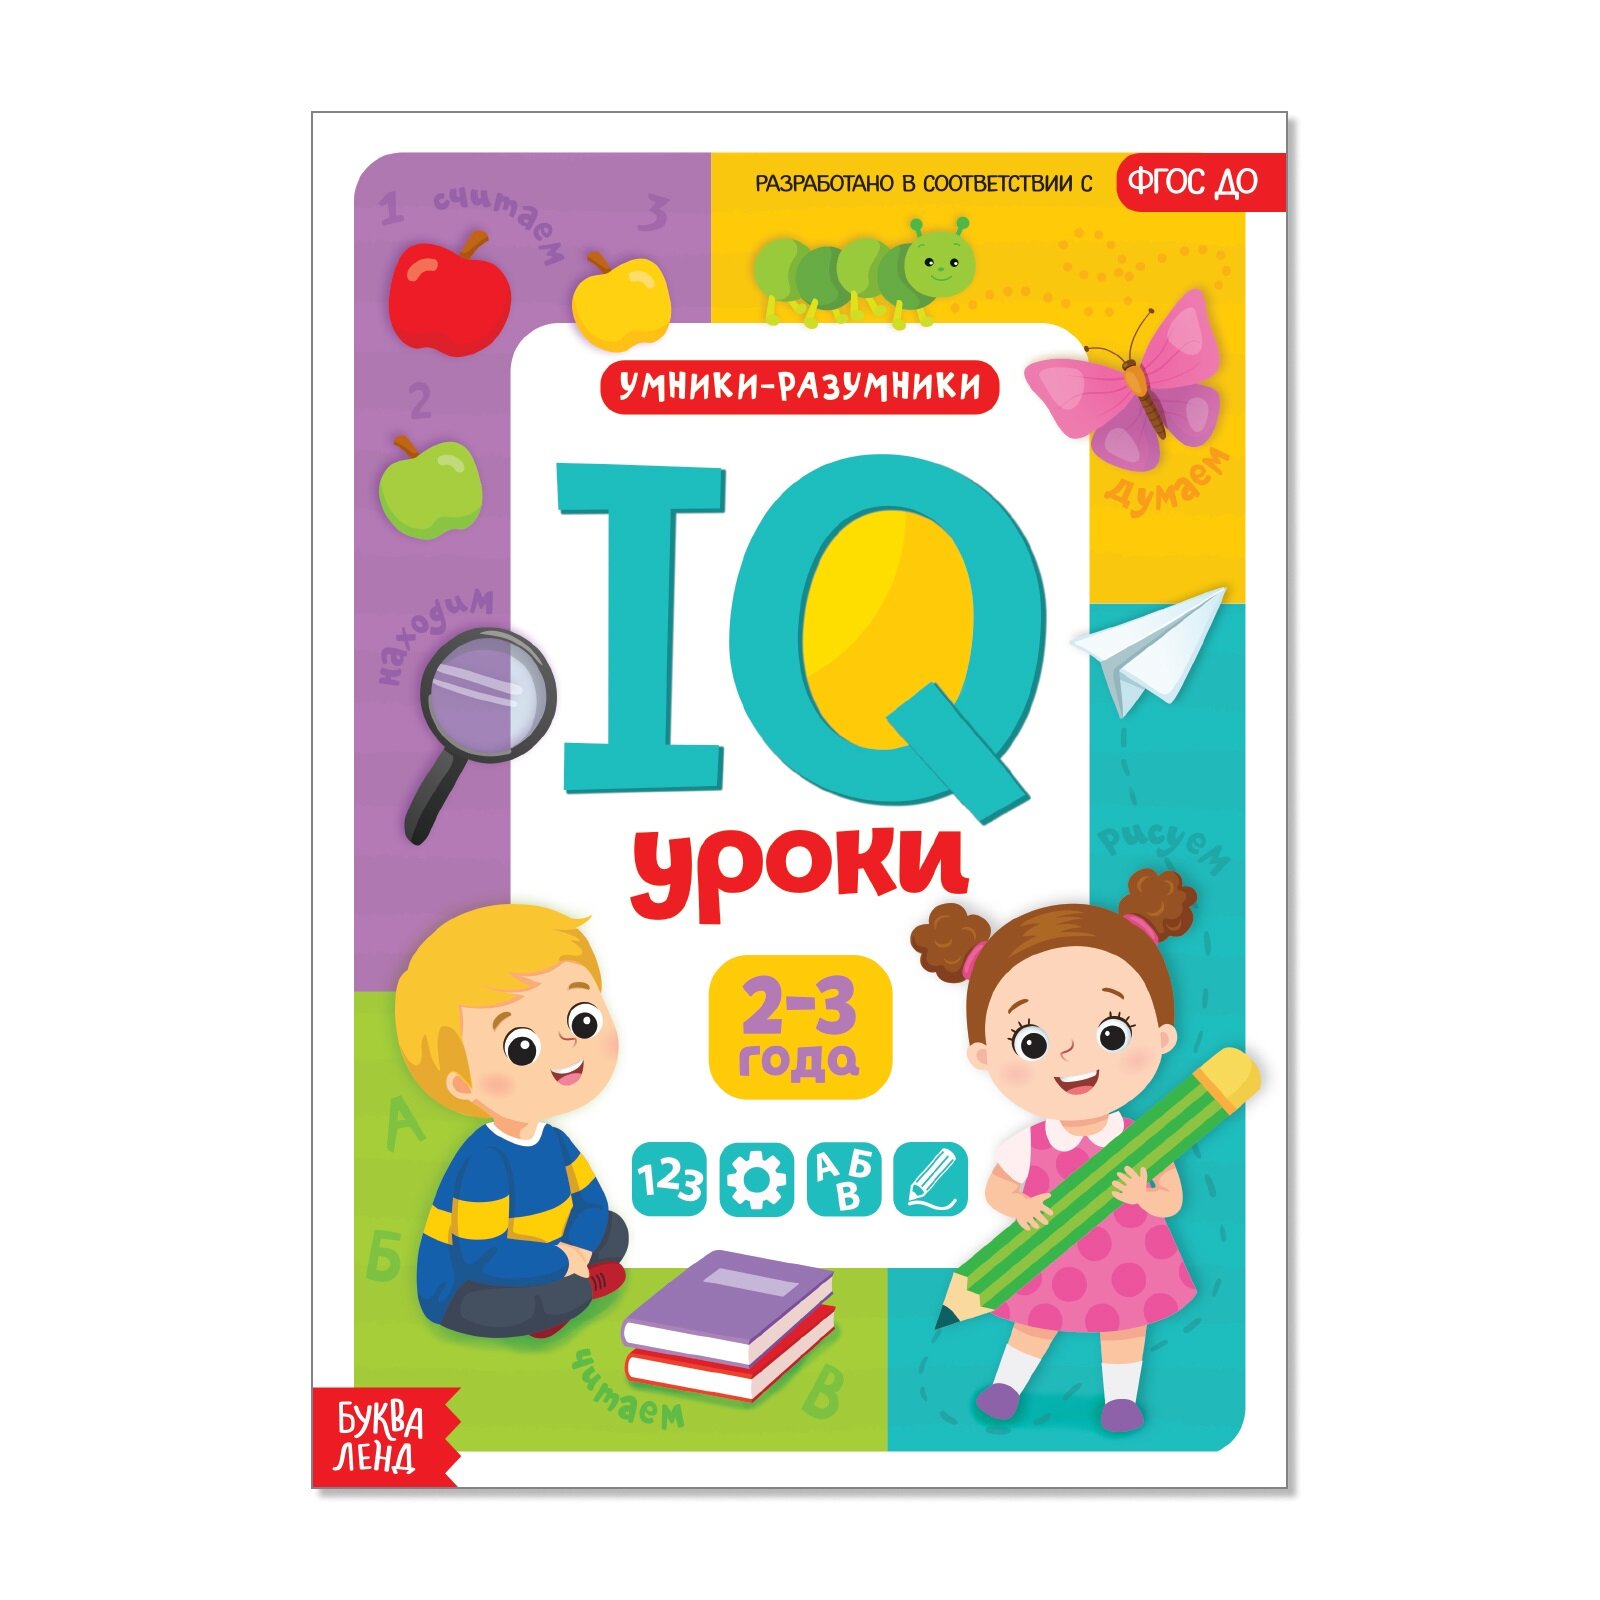 Обучающая книга "IQ уроки для детей от 2 до 3 лет" 20 стр.